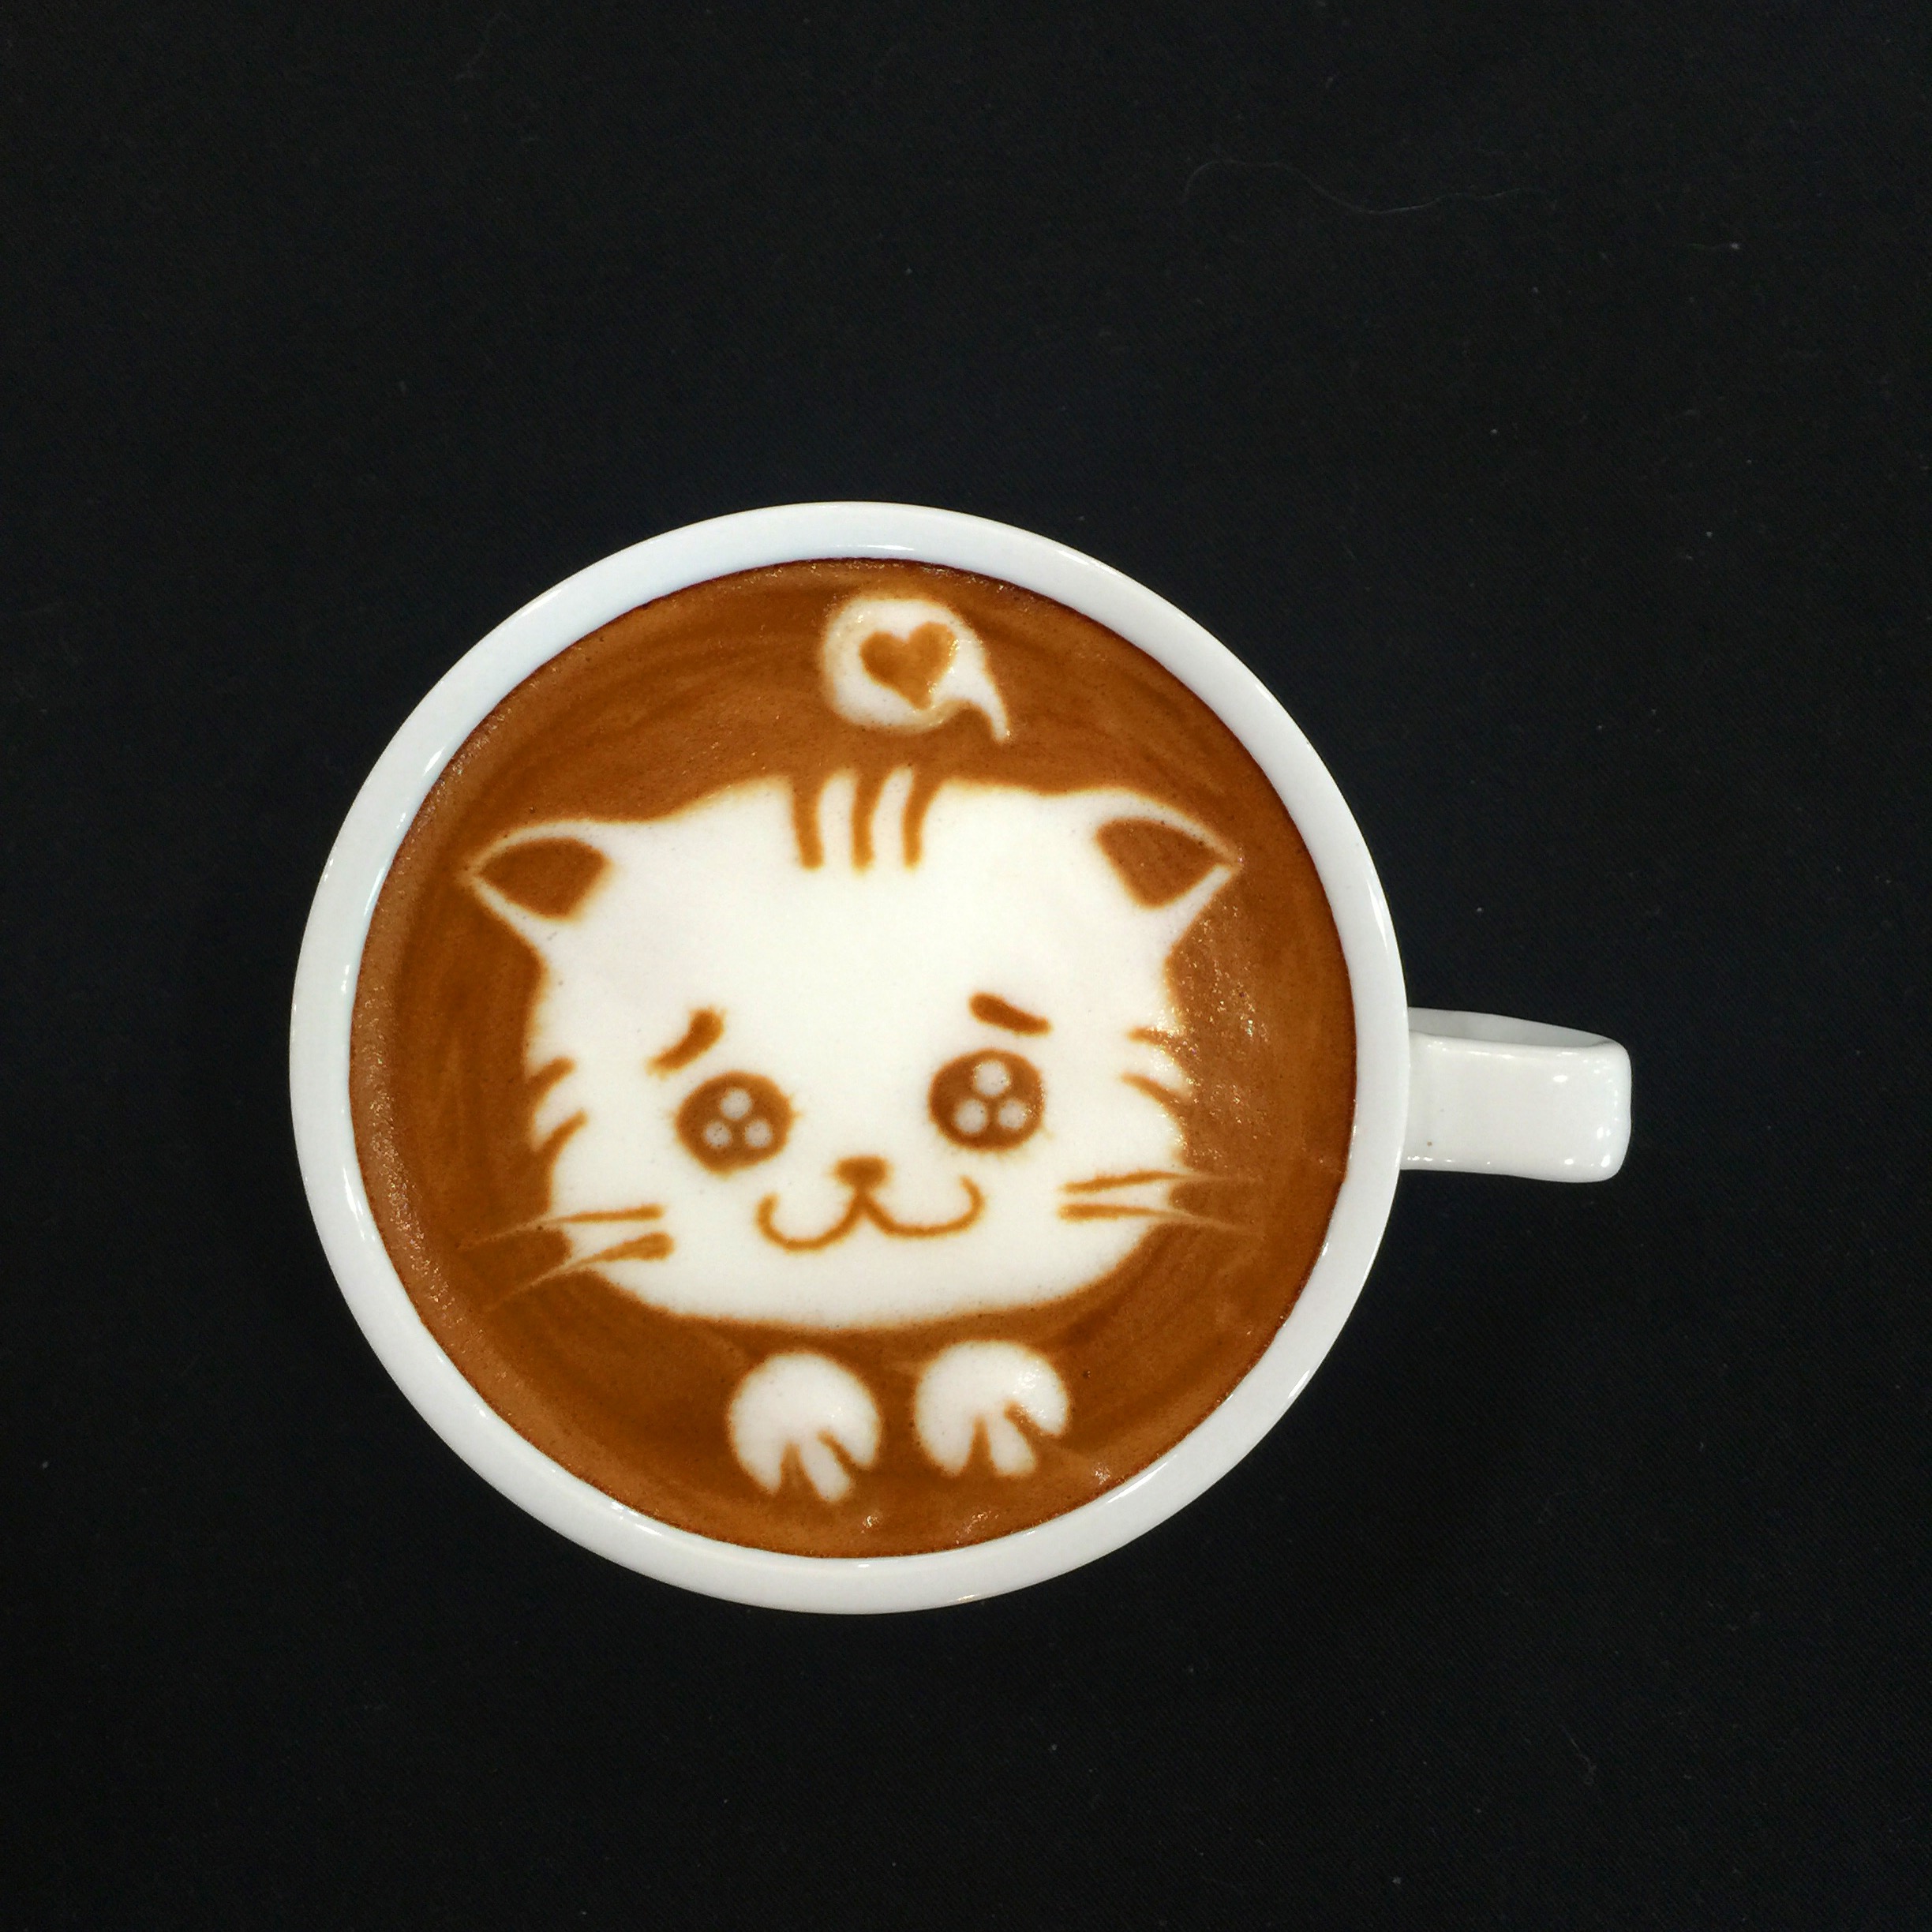 王森名厨中心咖啡艺术之拉花咖啡,雕花咖啡